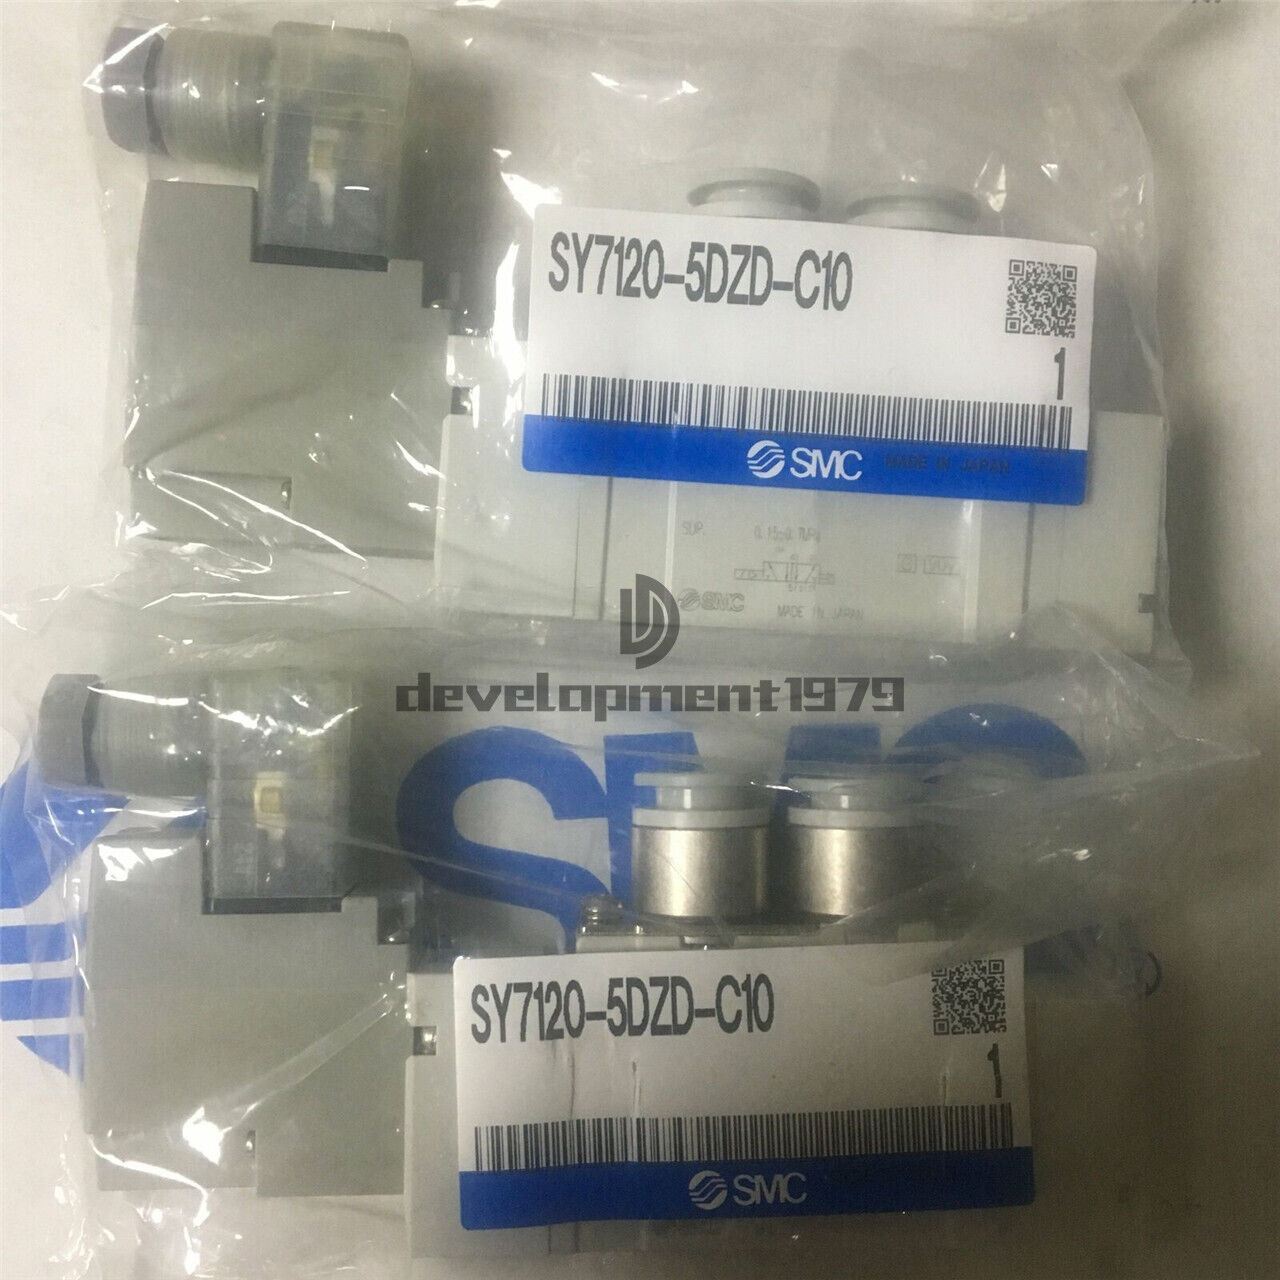 NEW 1PC SMC Solenoid Valve SY7120-5DZD-C10